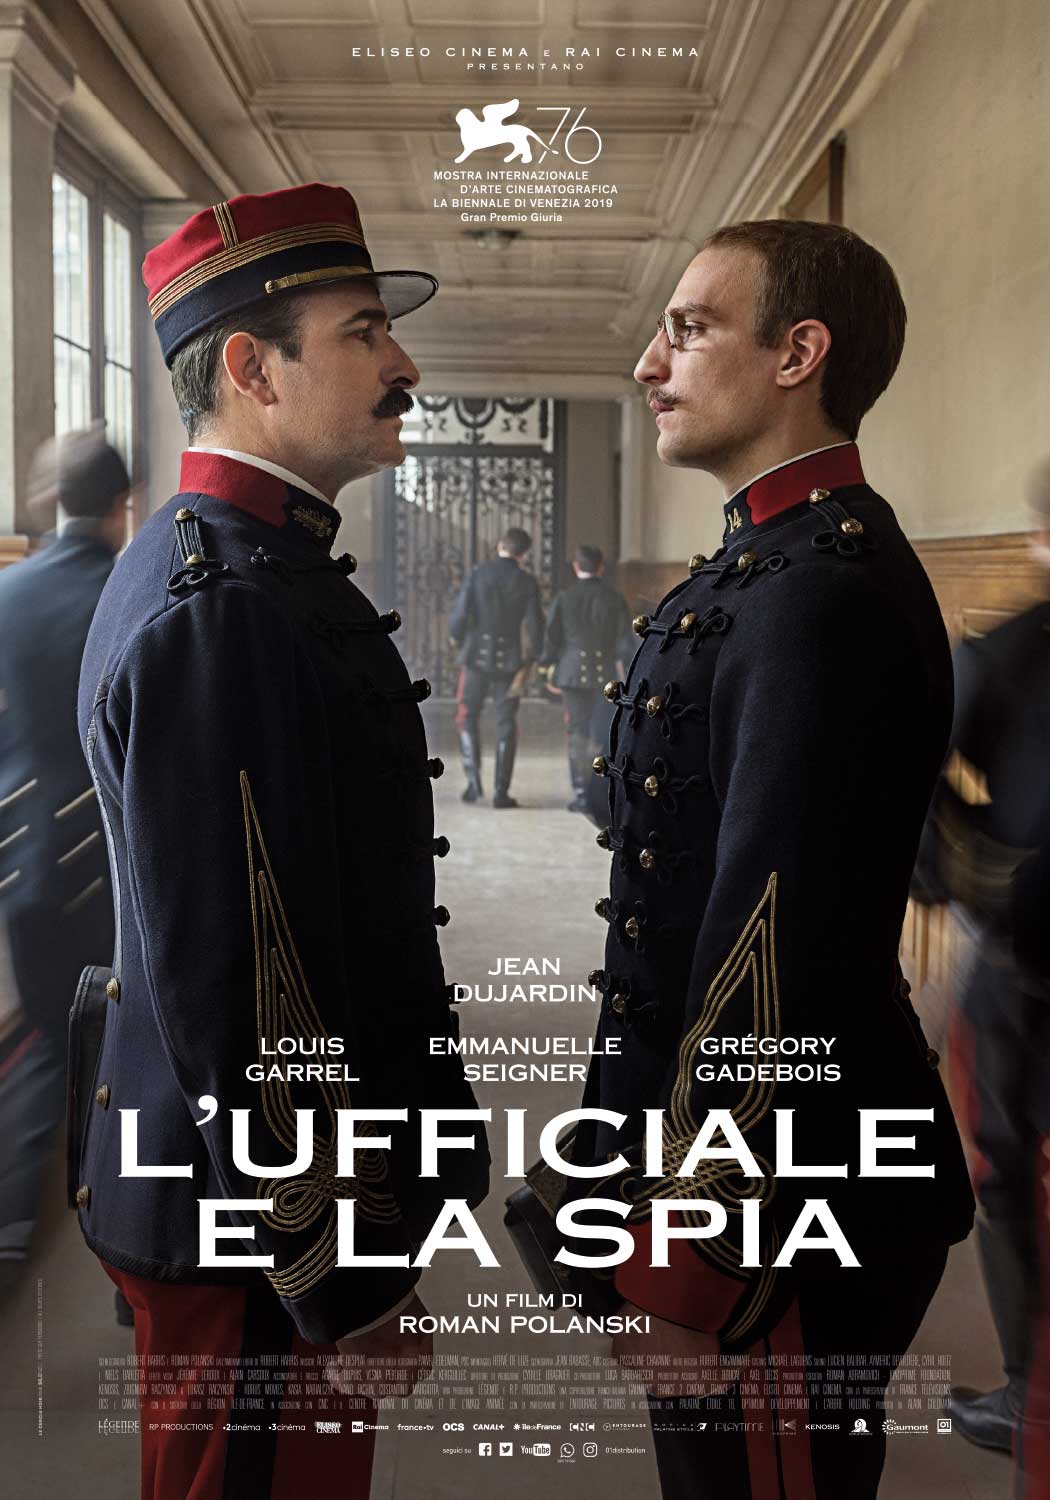 Locandina del film 'L'ufficiale e la spia", versione italiana di 'J'accuse' di Roman Polanski